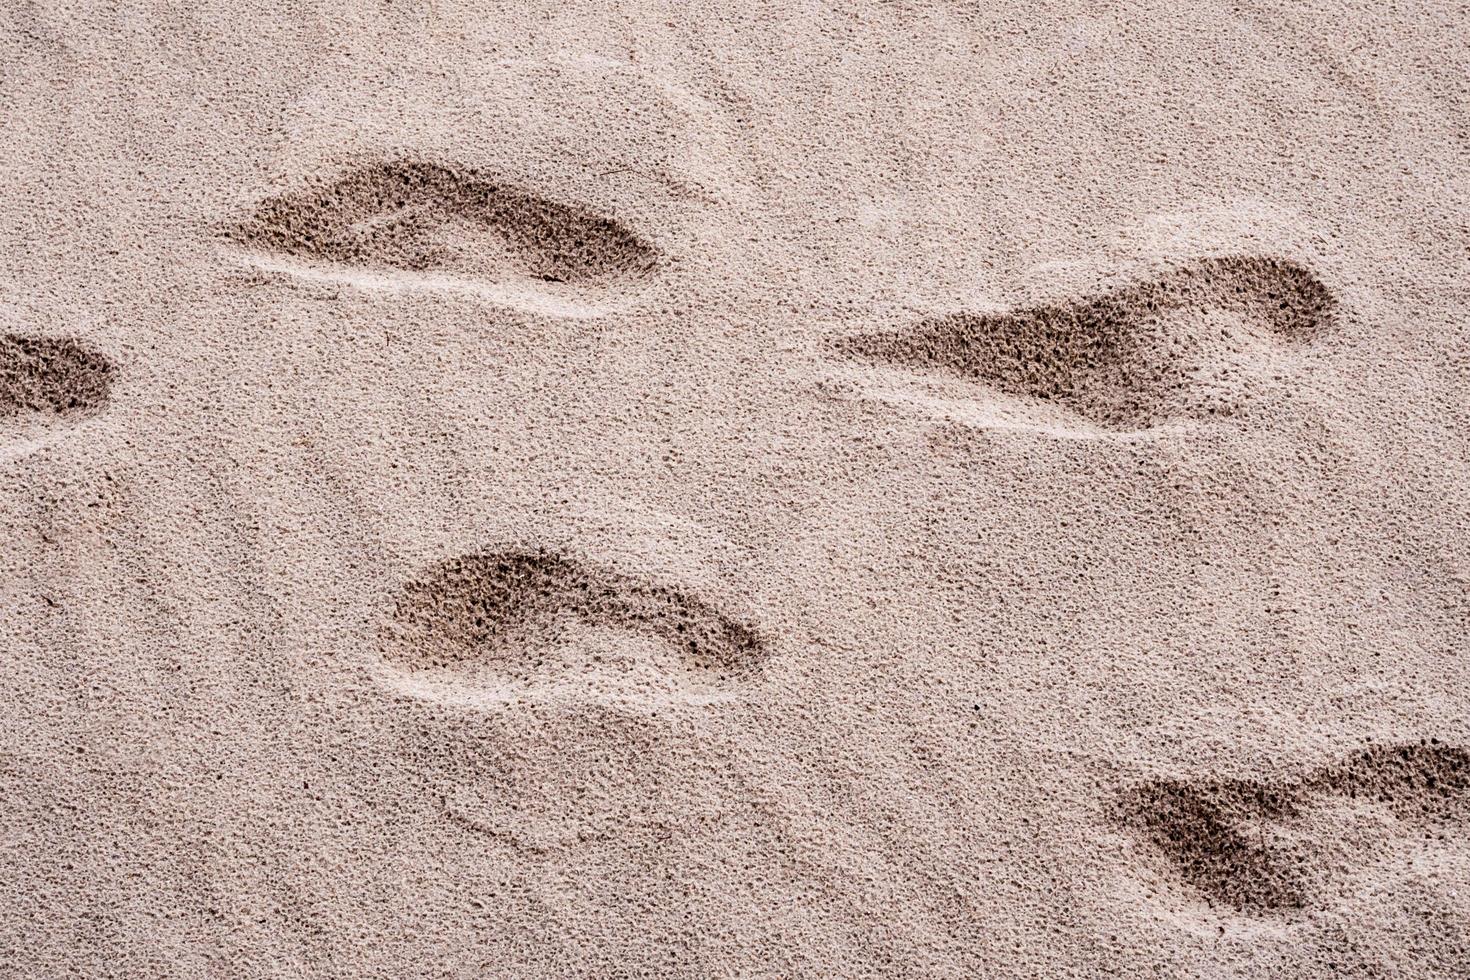 Gruben im Sand, verursacht durch den Fußabdruck der Menschen foto